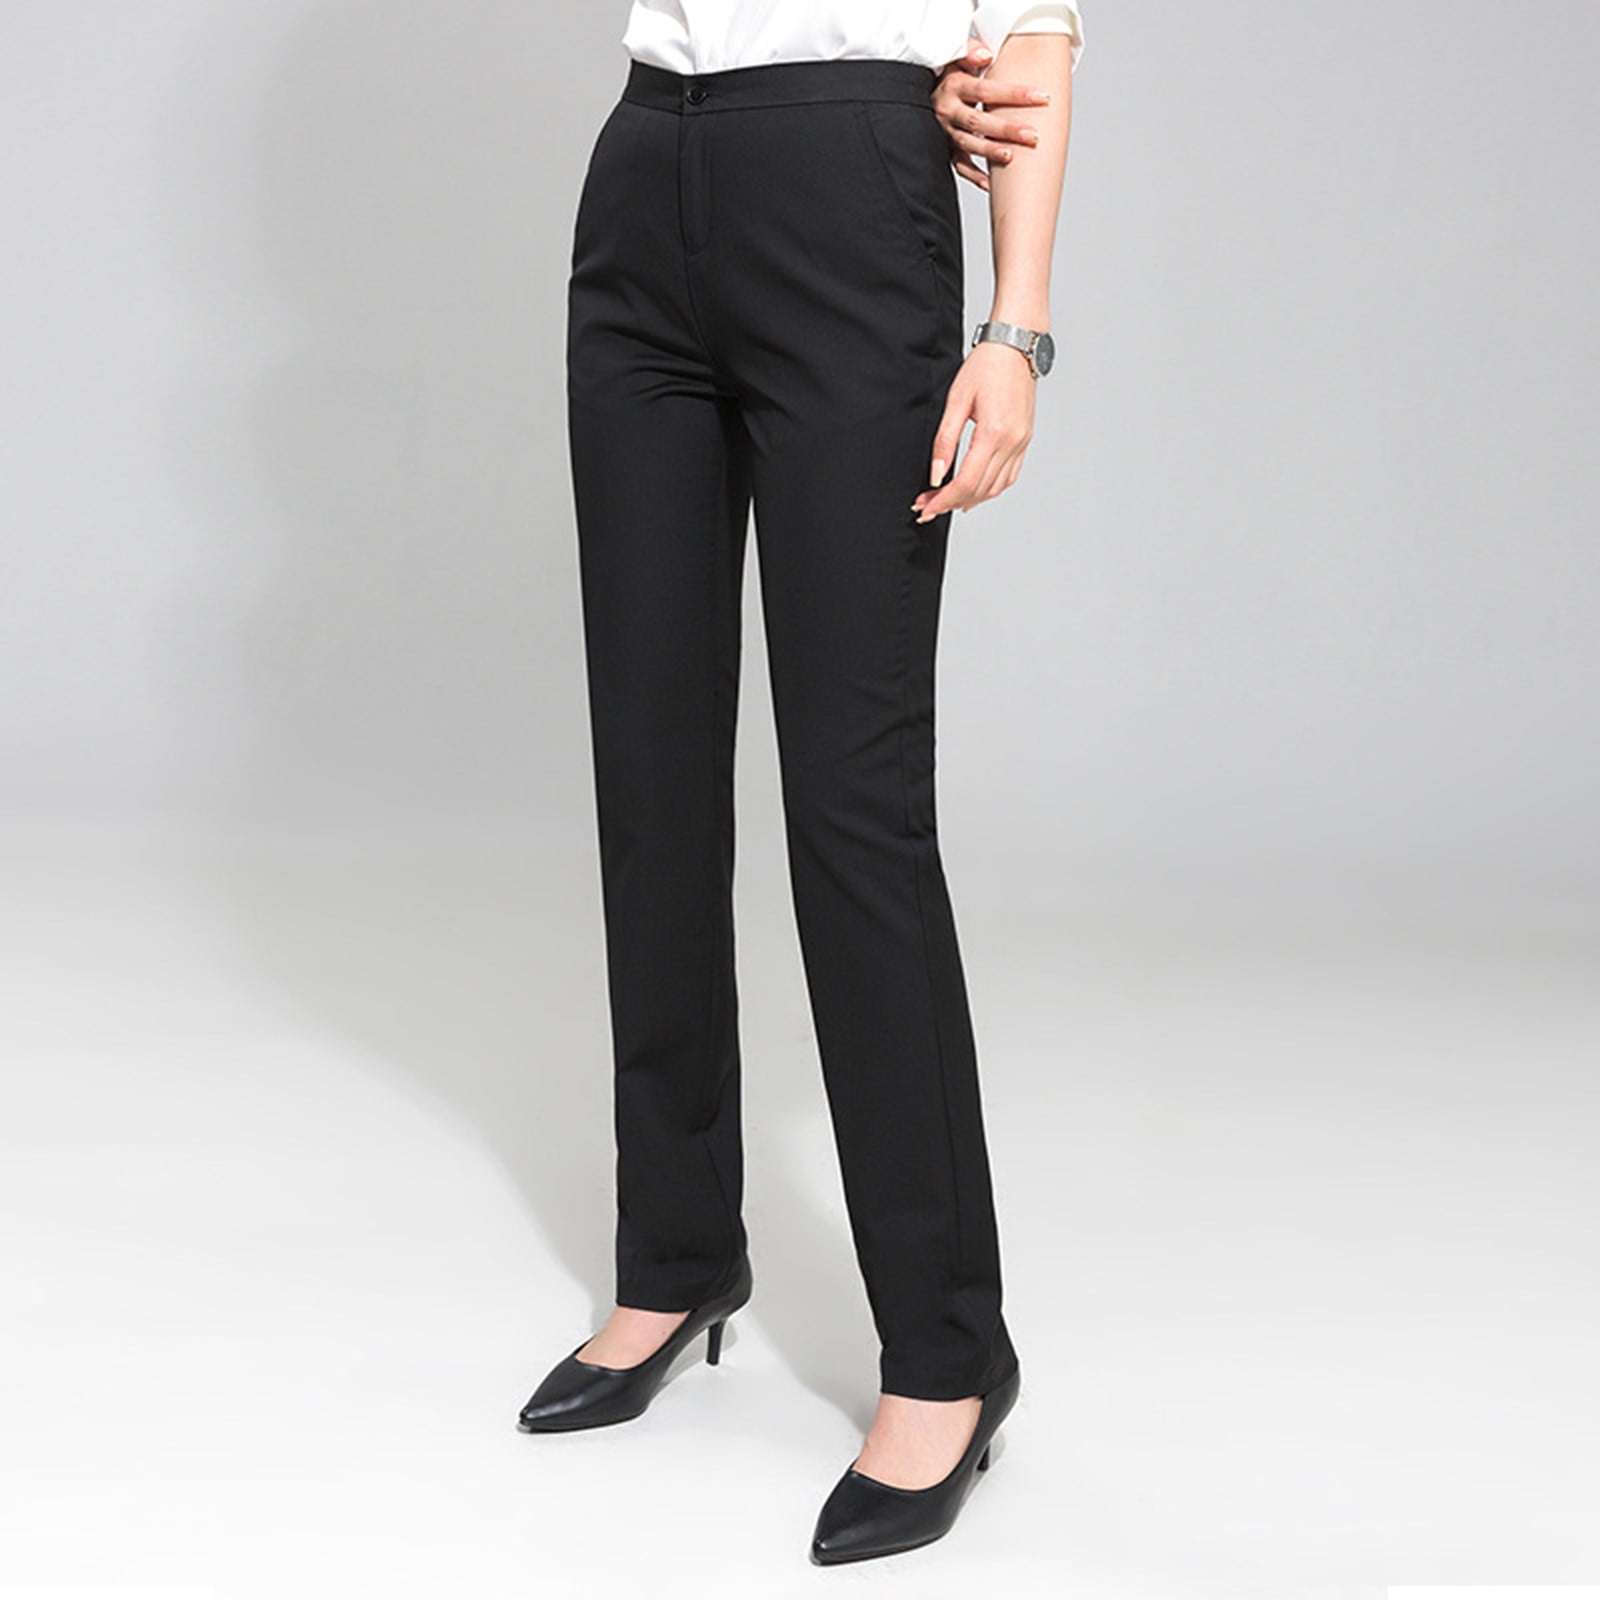 Ladies Black Office Wear Pants | Black Formal Pants Women Work - Office  Wear Pants - Aliexpress